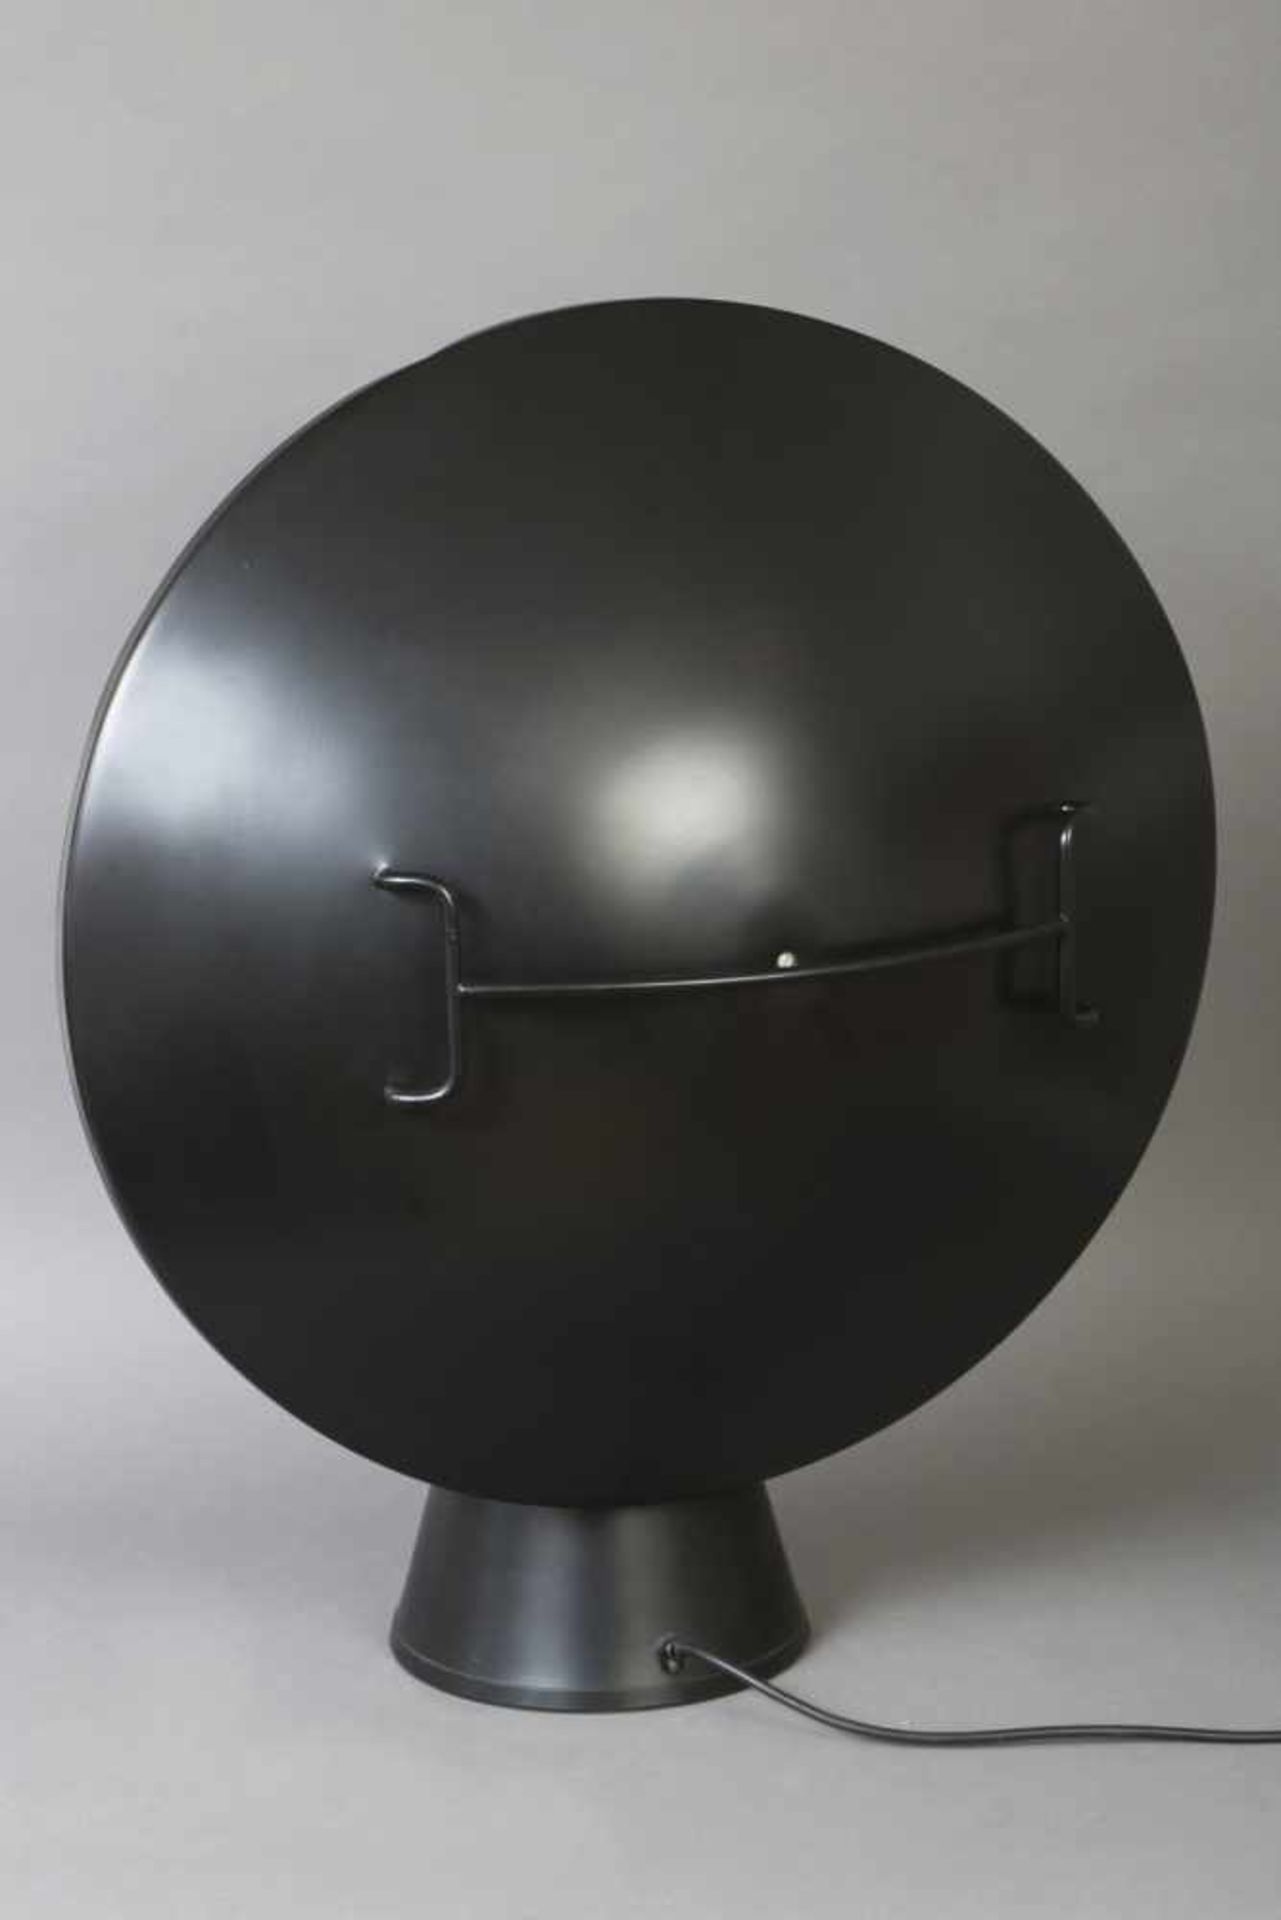 Tischlampeschwarz lackiertes Metall, runder, verstellbarer Schirm auf kegelförmigem Stand, 1 - Bild 2 aus 2